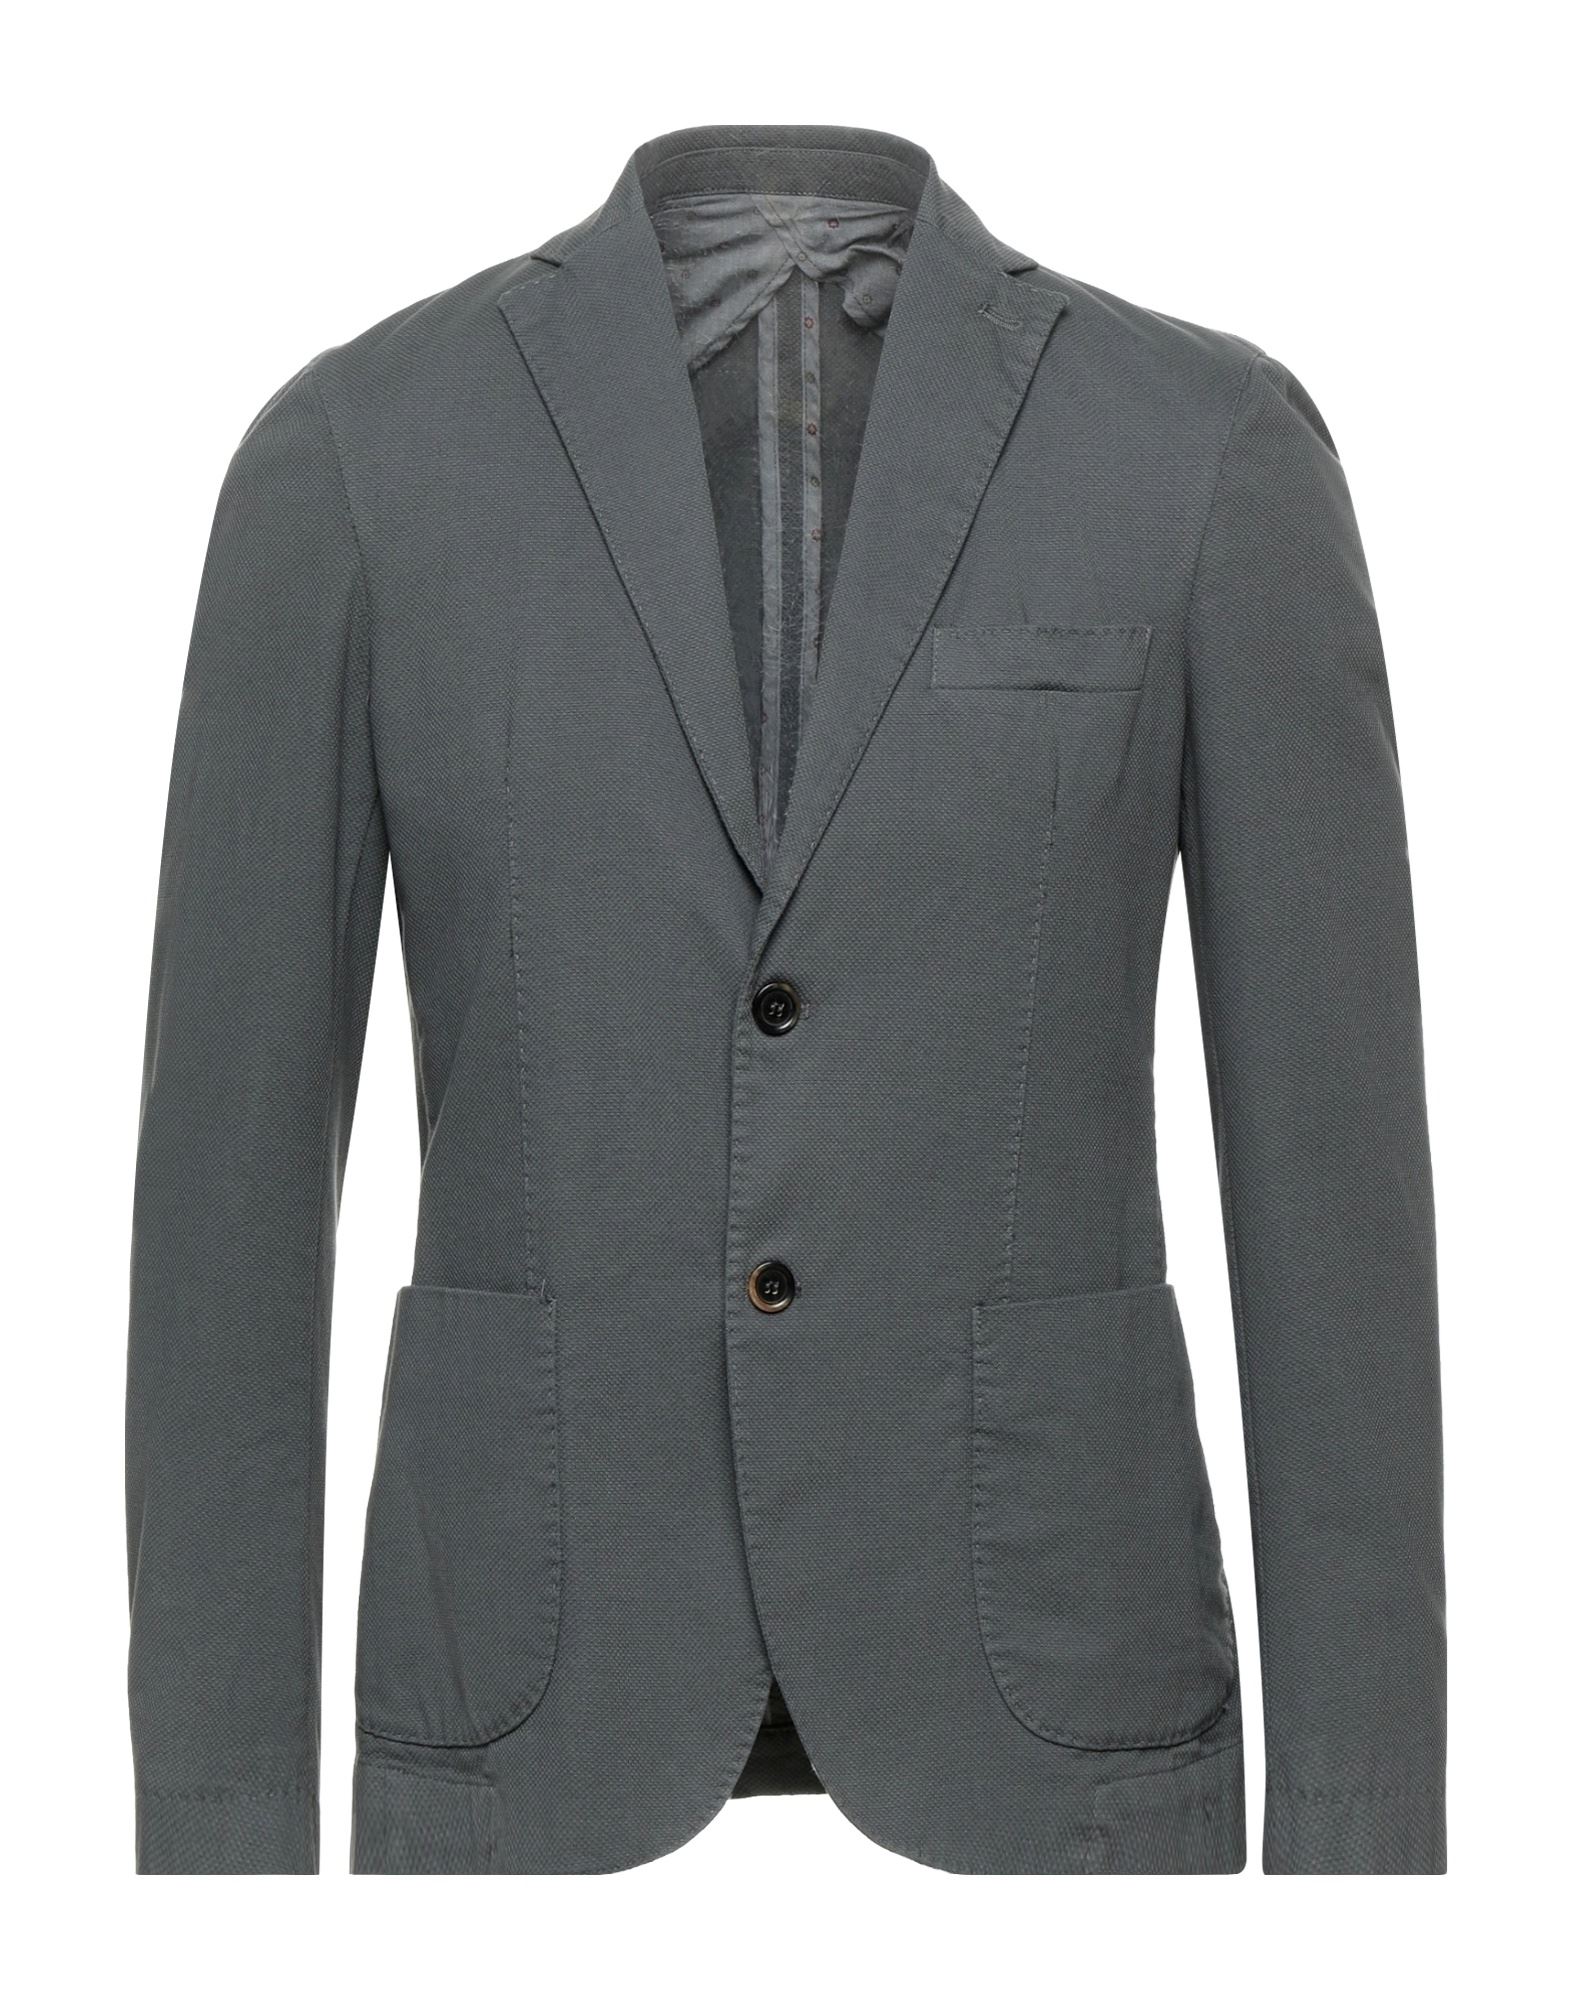 AGO.RA.LO. Suit jackets